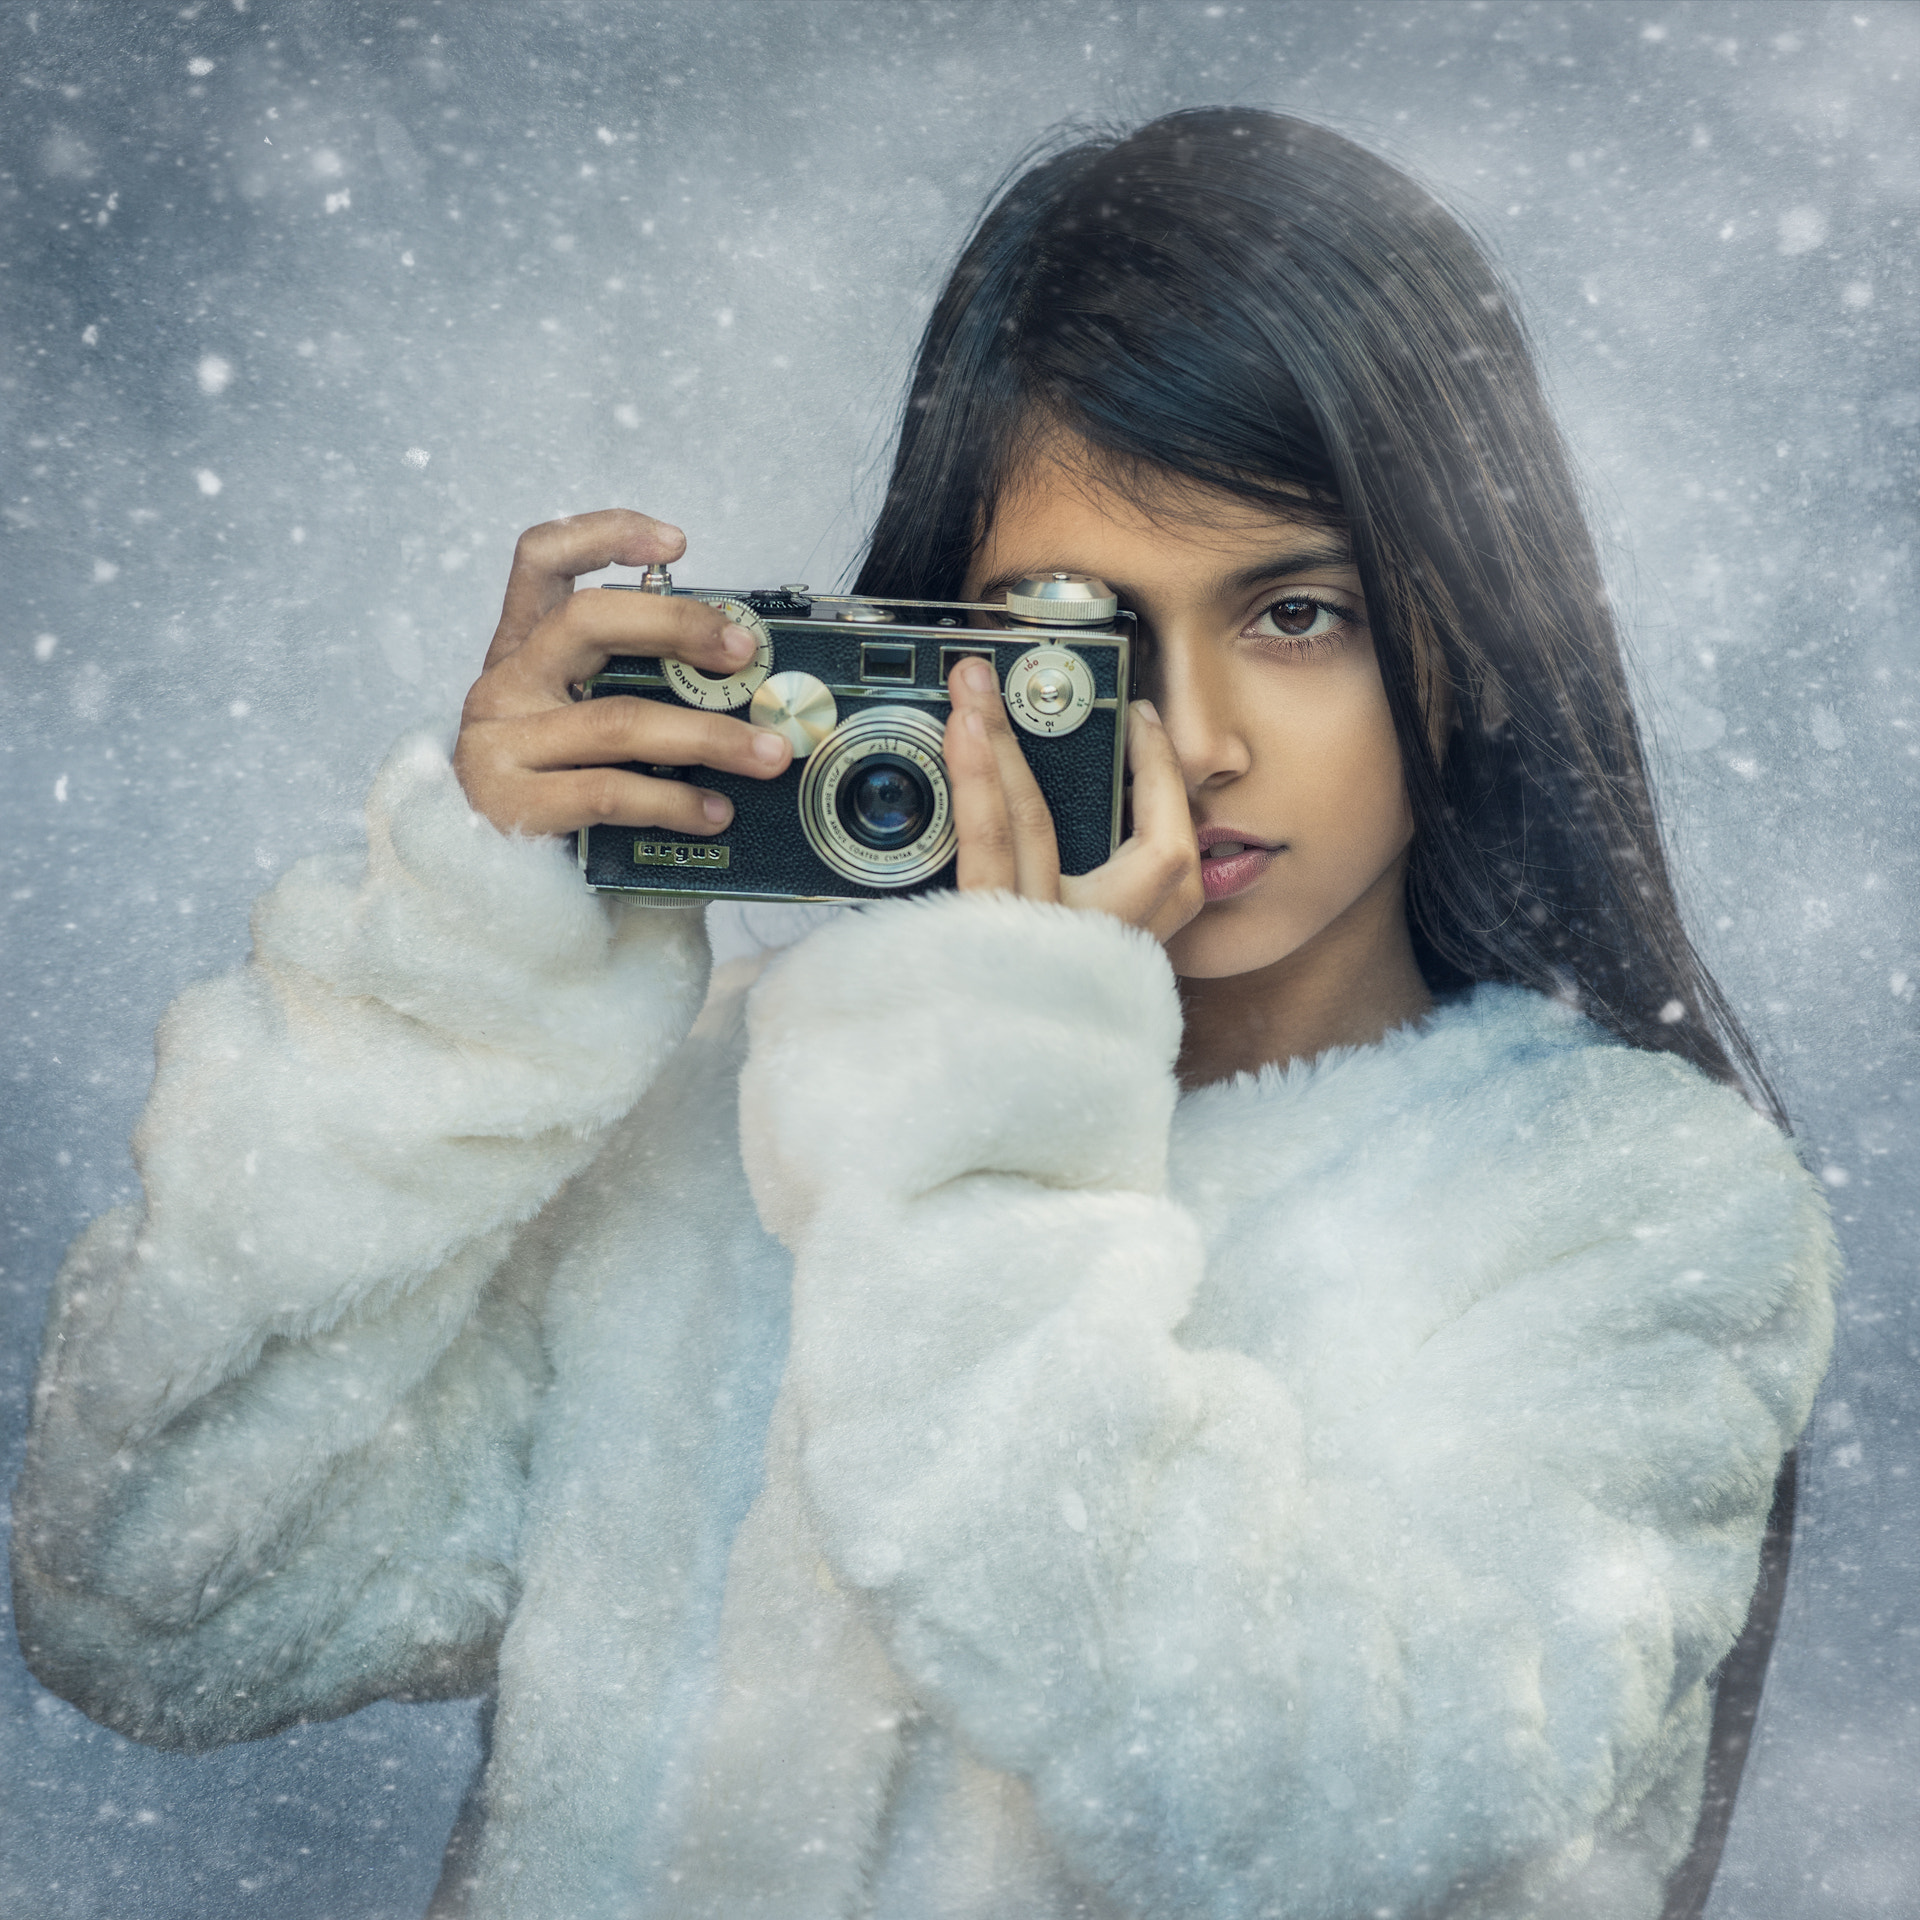 Nikon D810 + ZEISS Apo Sonnar T* 135mm F2 sample photo. Winter portrait photography